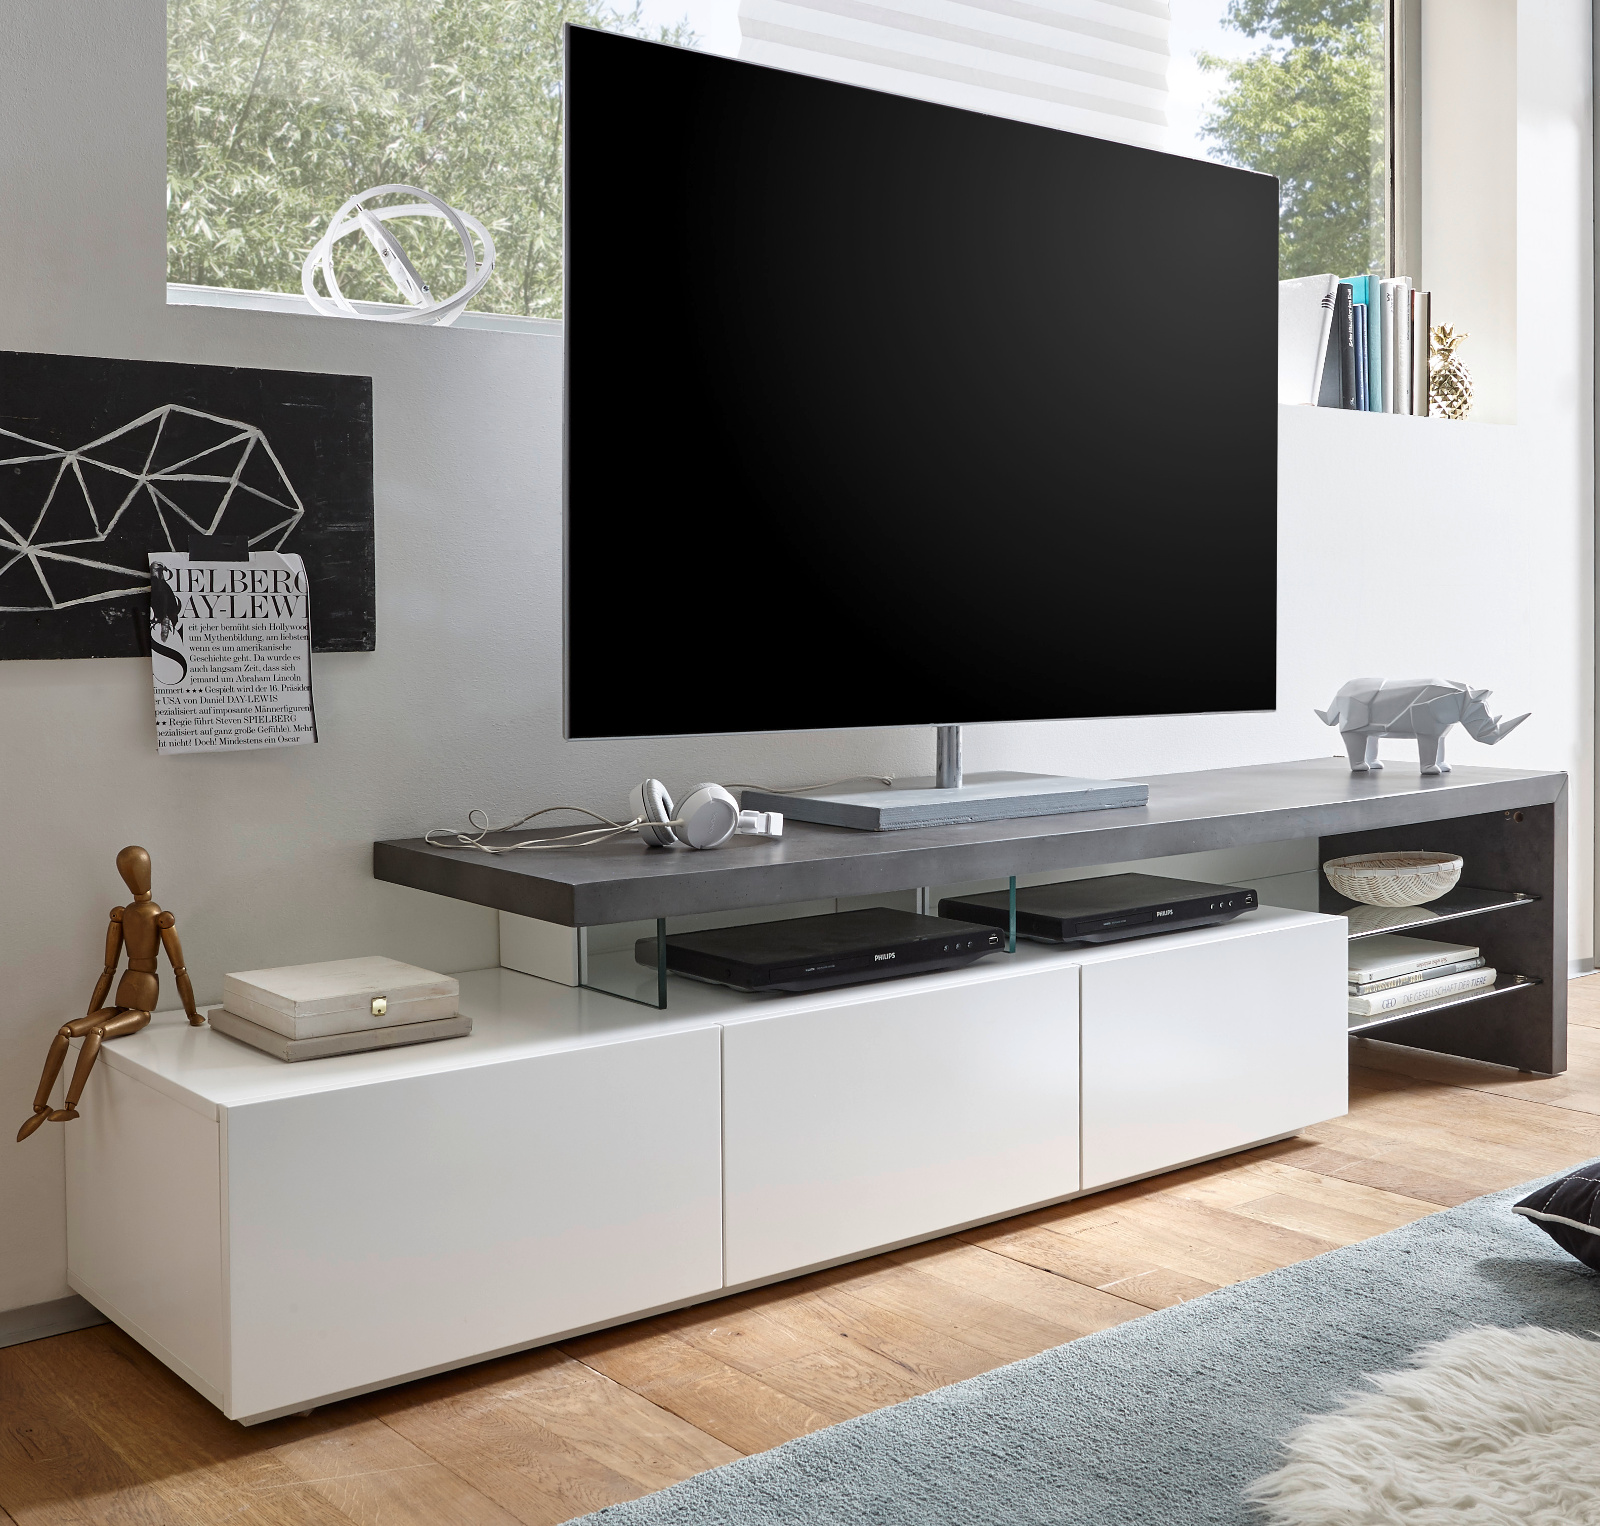 TV-Lowboard Alimos in weiß und Beton Design | Kaufland.de